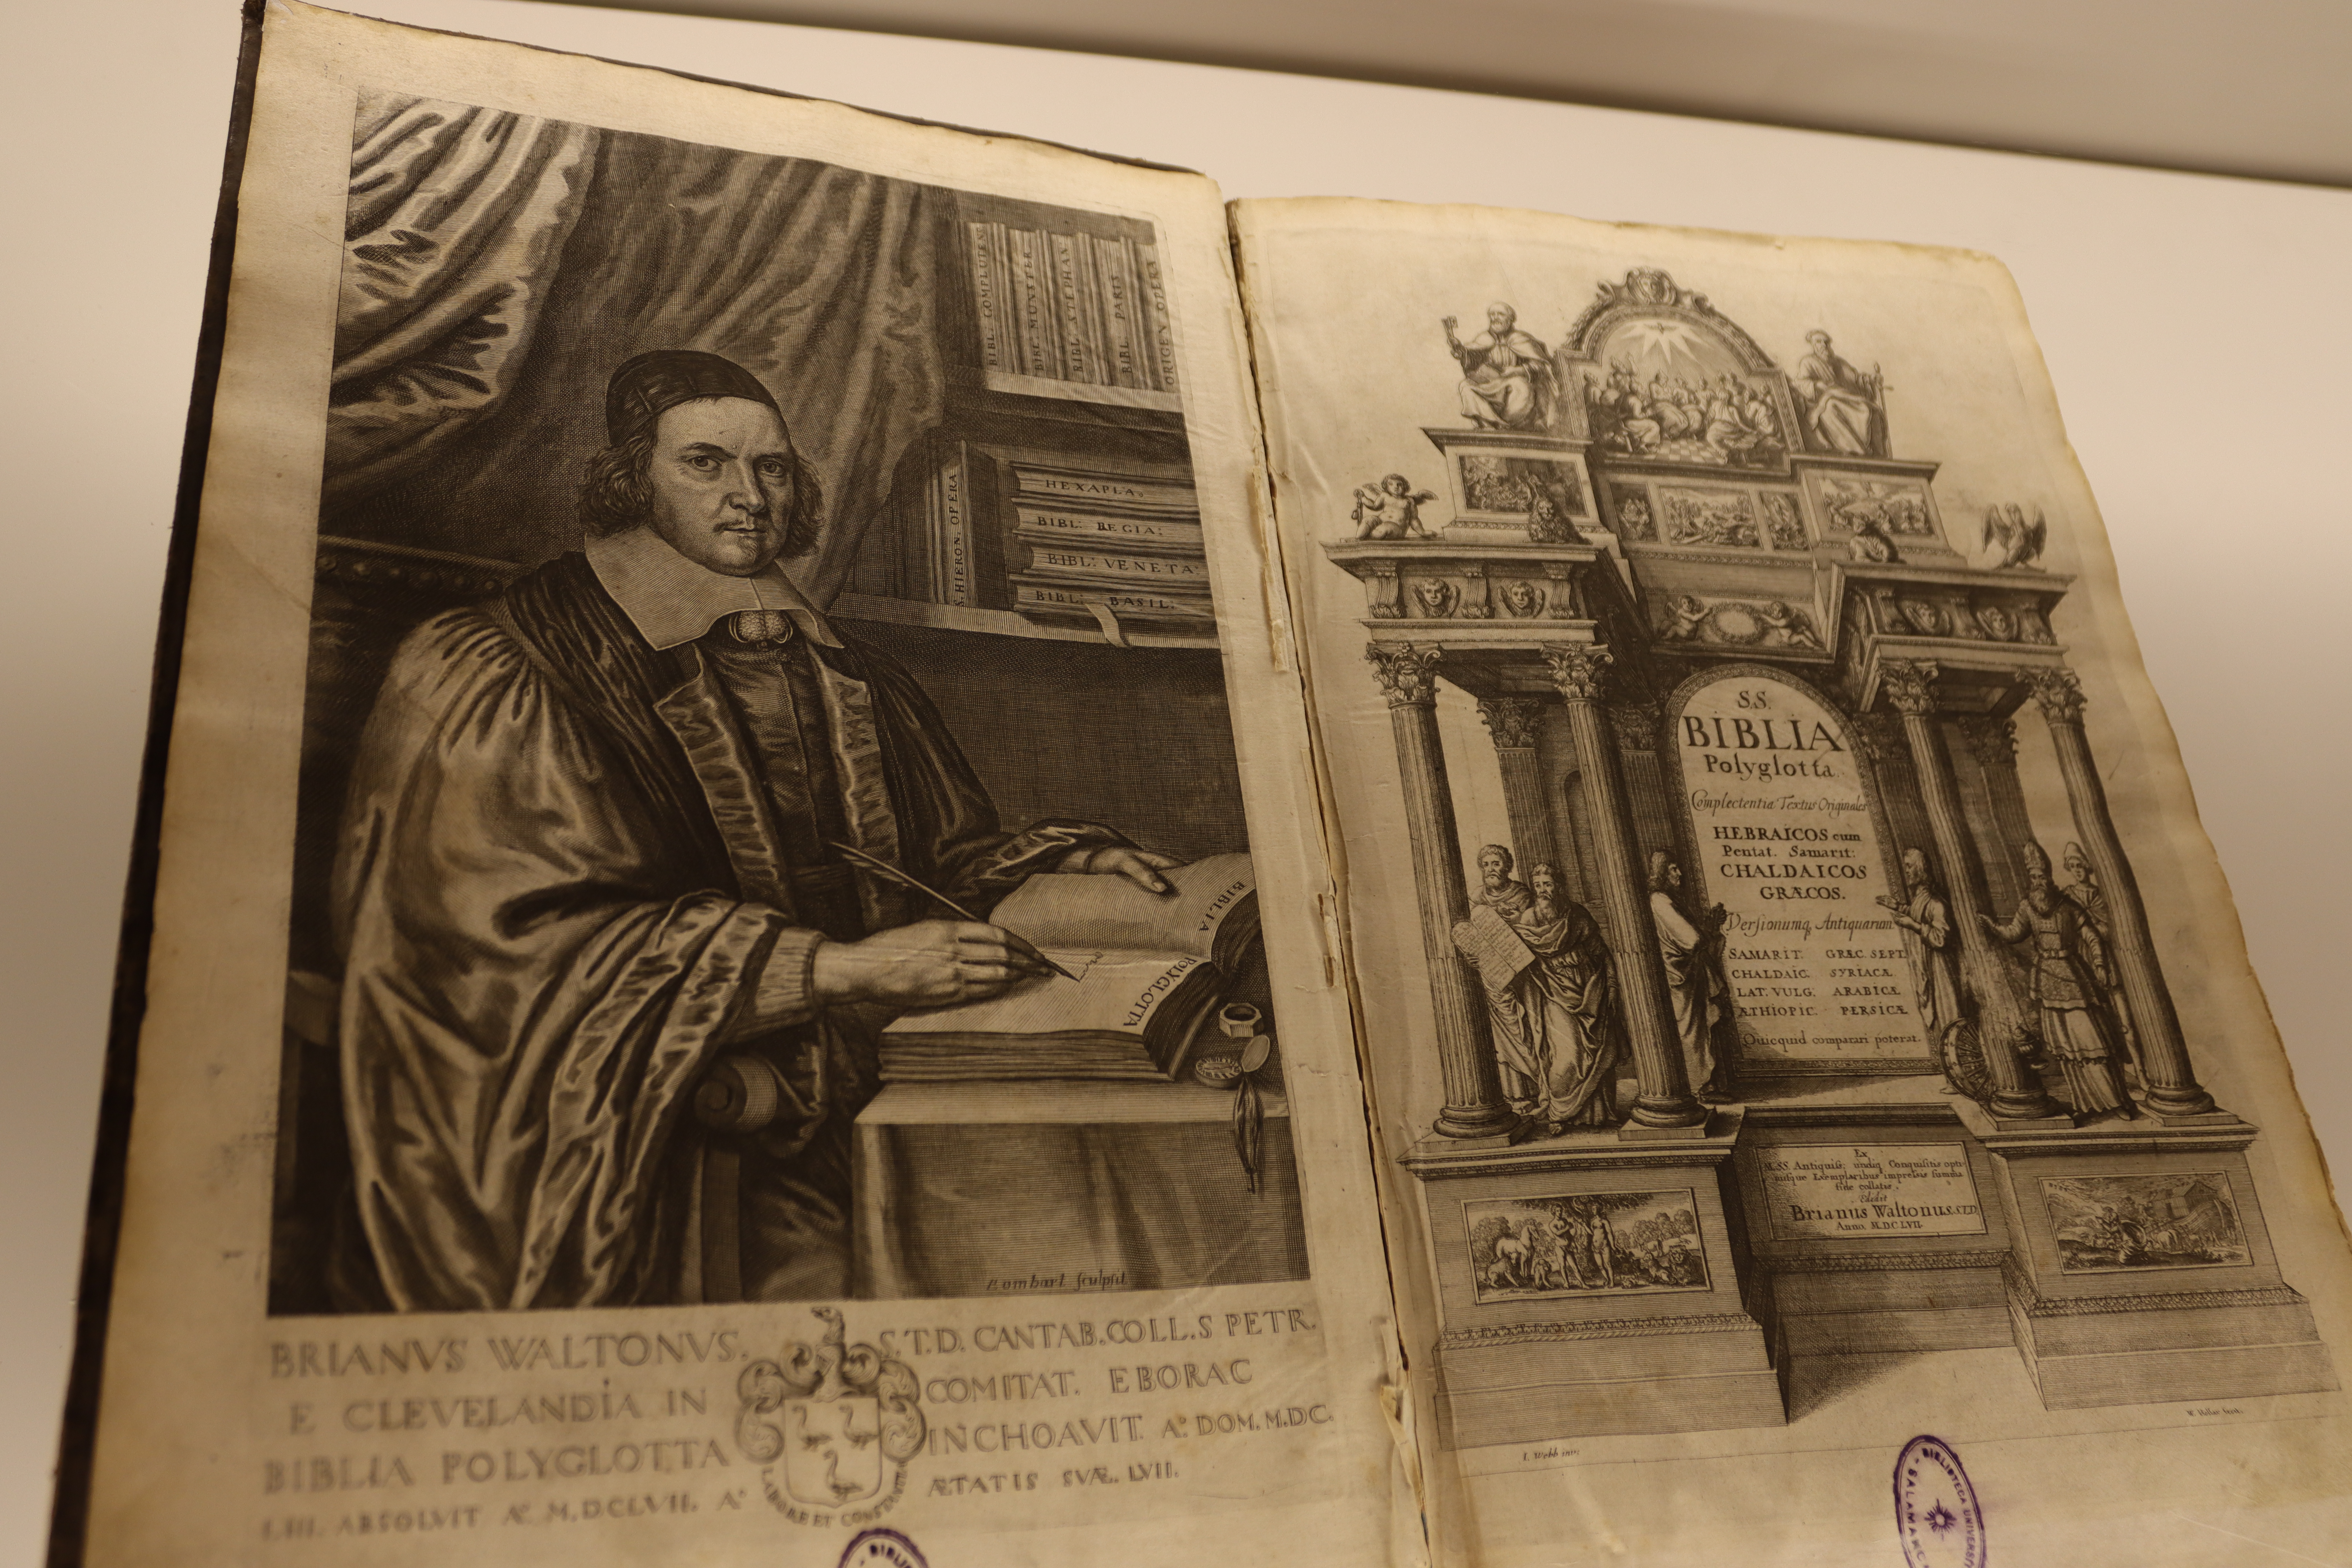 La Universidad de Salamanca estudia la obra de Jerónimo de Estridón a través de una exposición bibliográfica